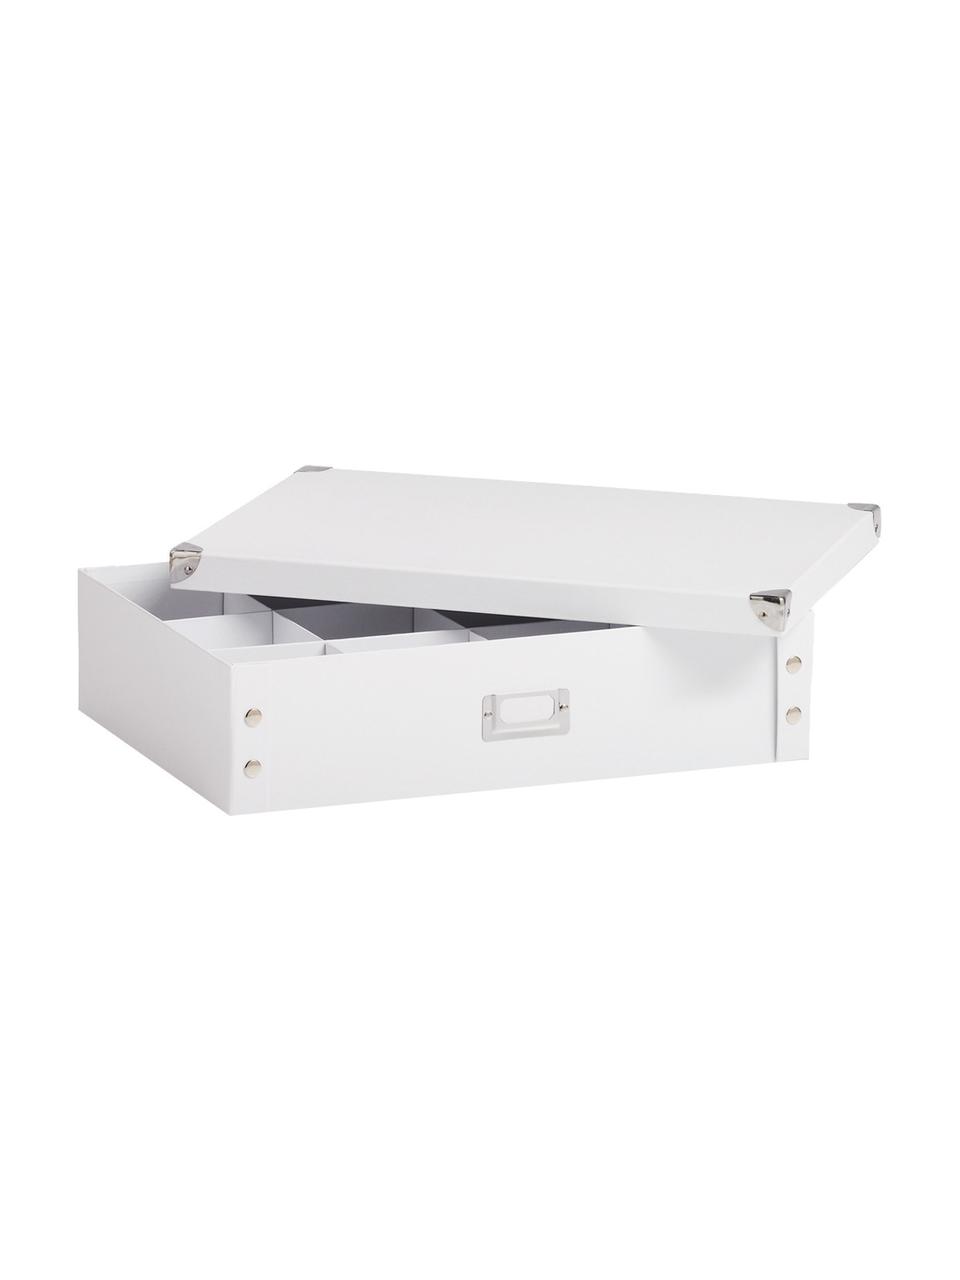 Aufbewahrungsbox Karo, Papier, Pappe, Metall, Weiß, B 45 x H 11 cm